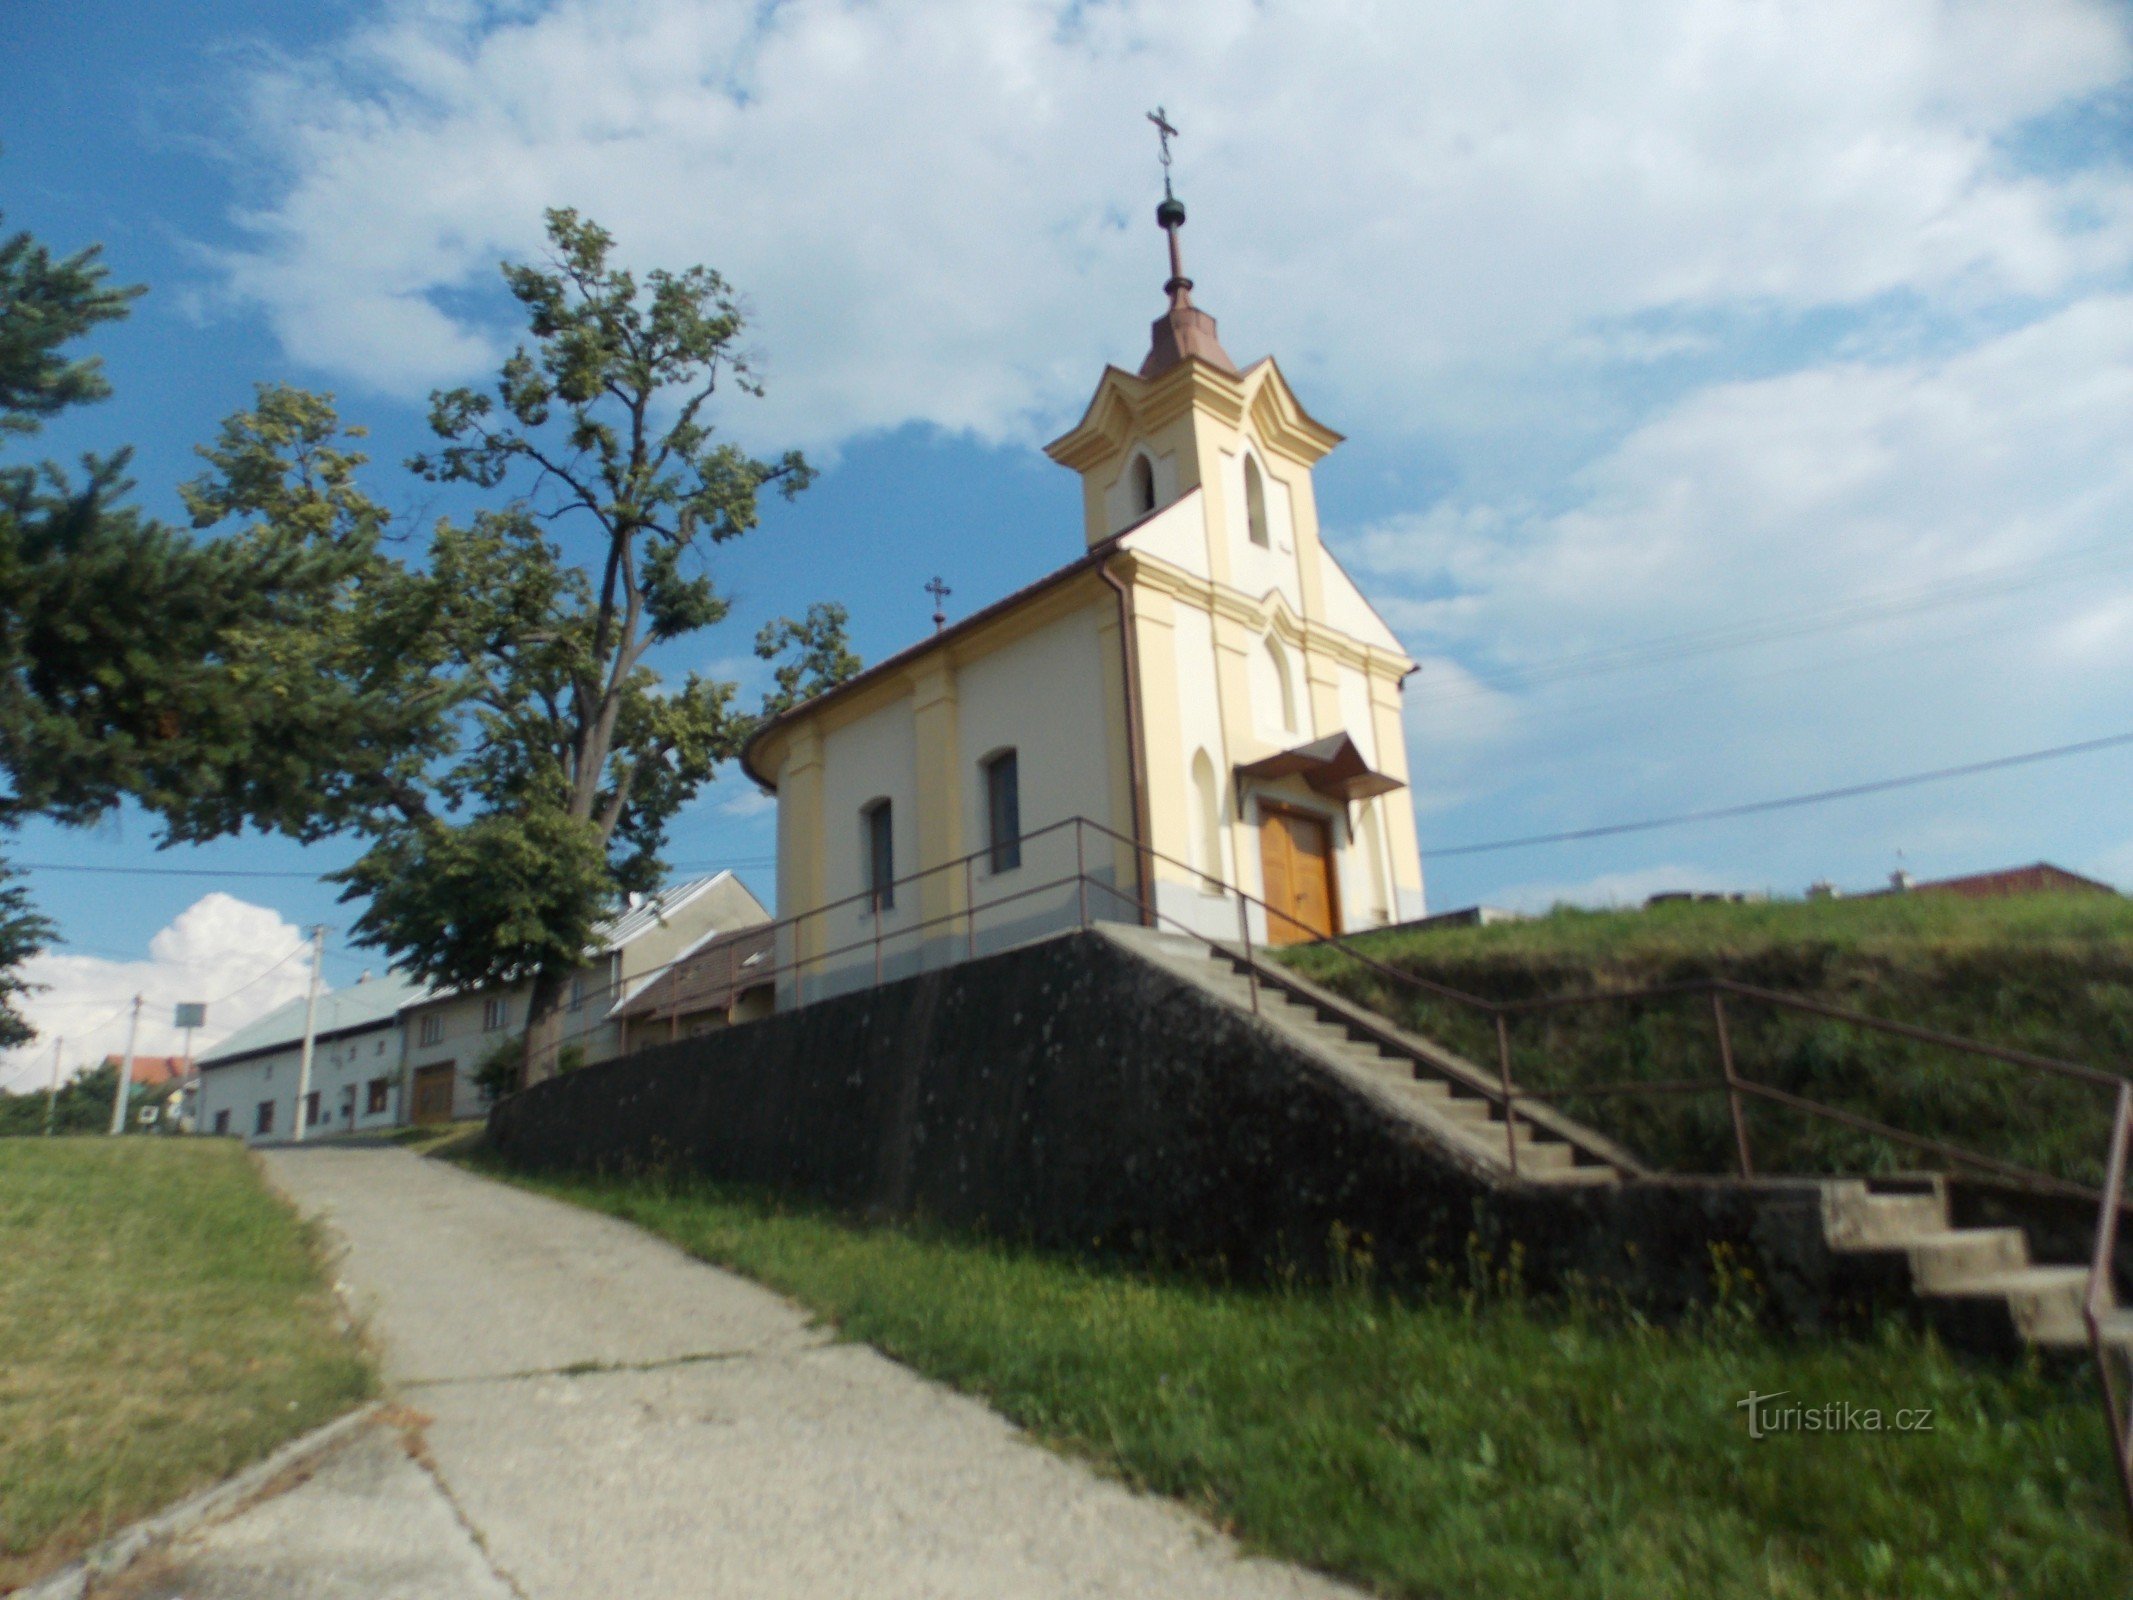 To the village of Hostišová in the Zlín region